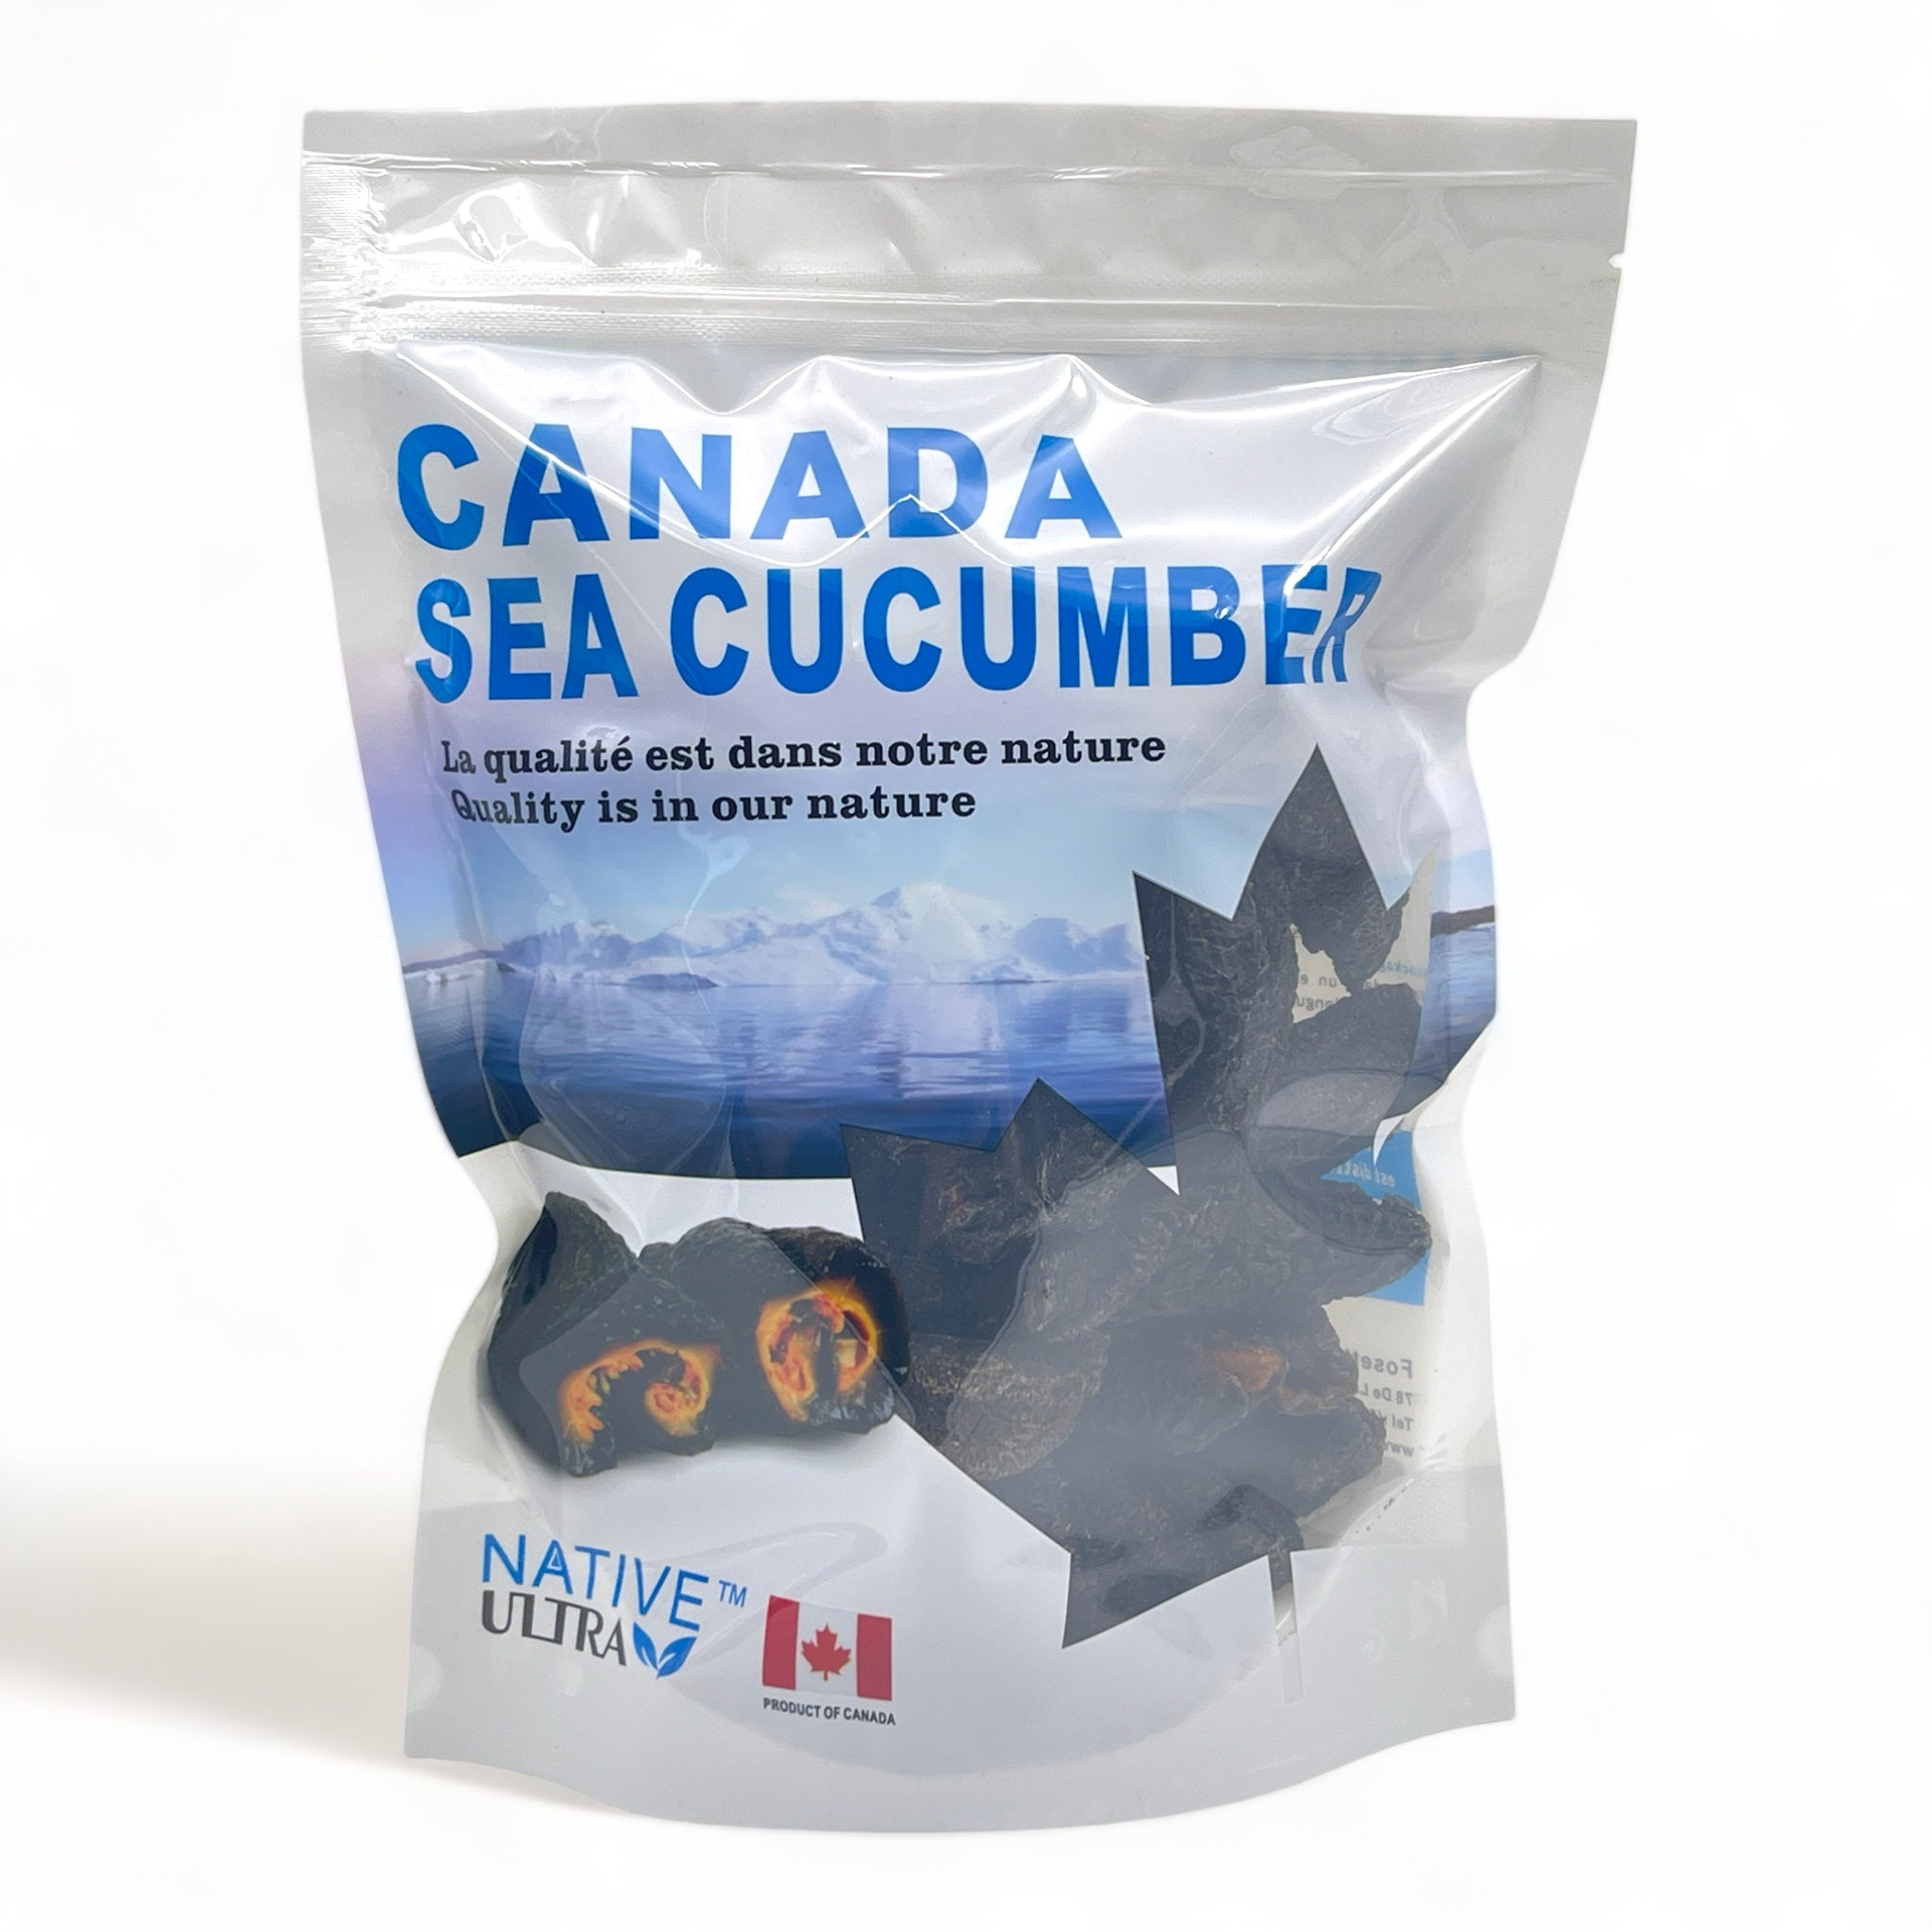 NATIVE ULTRA Canada Wild Sea Cucumber (Butterfly-Cut), 454g/Bag